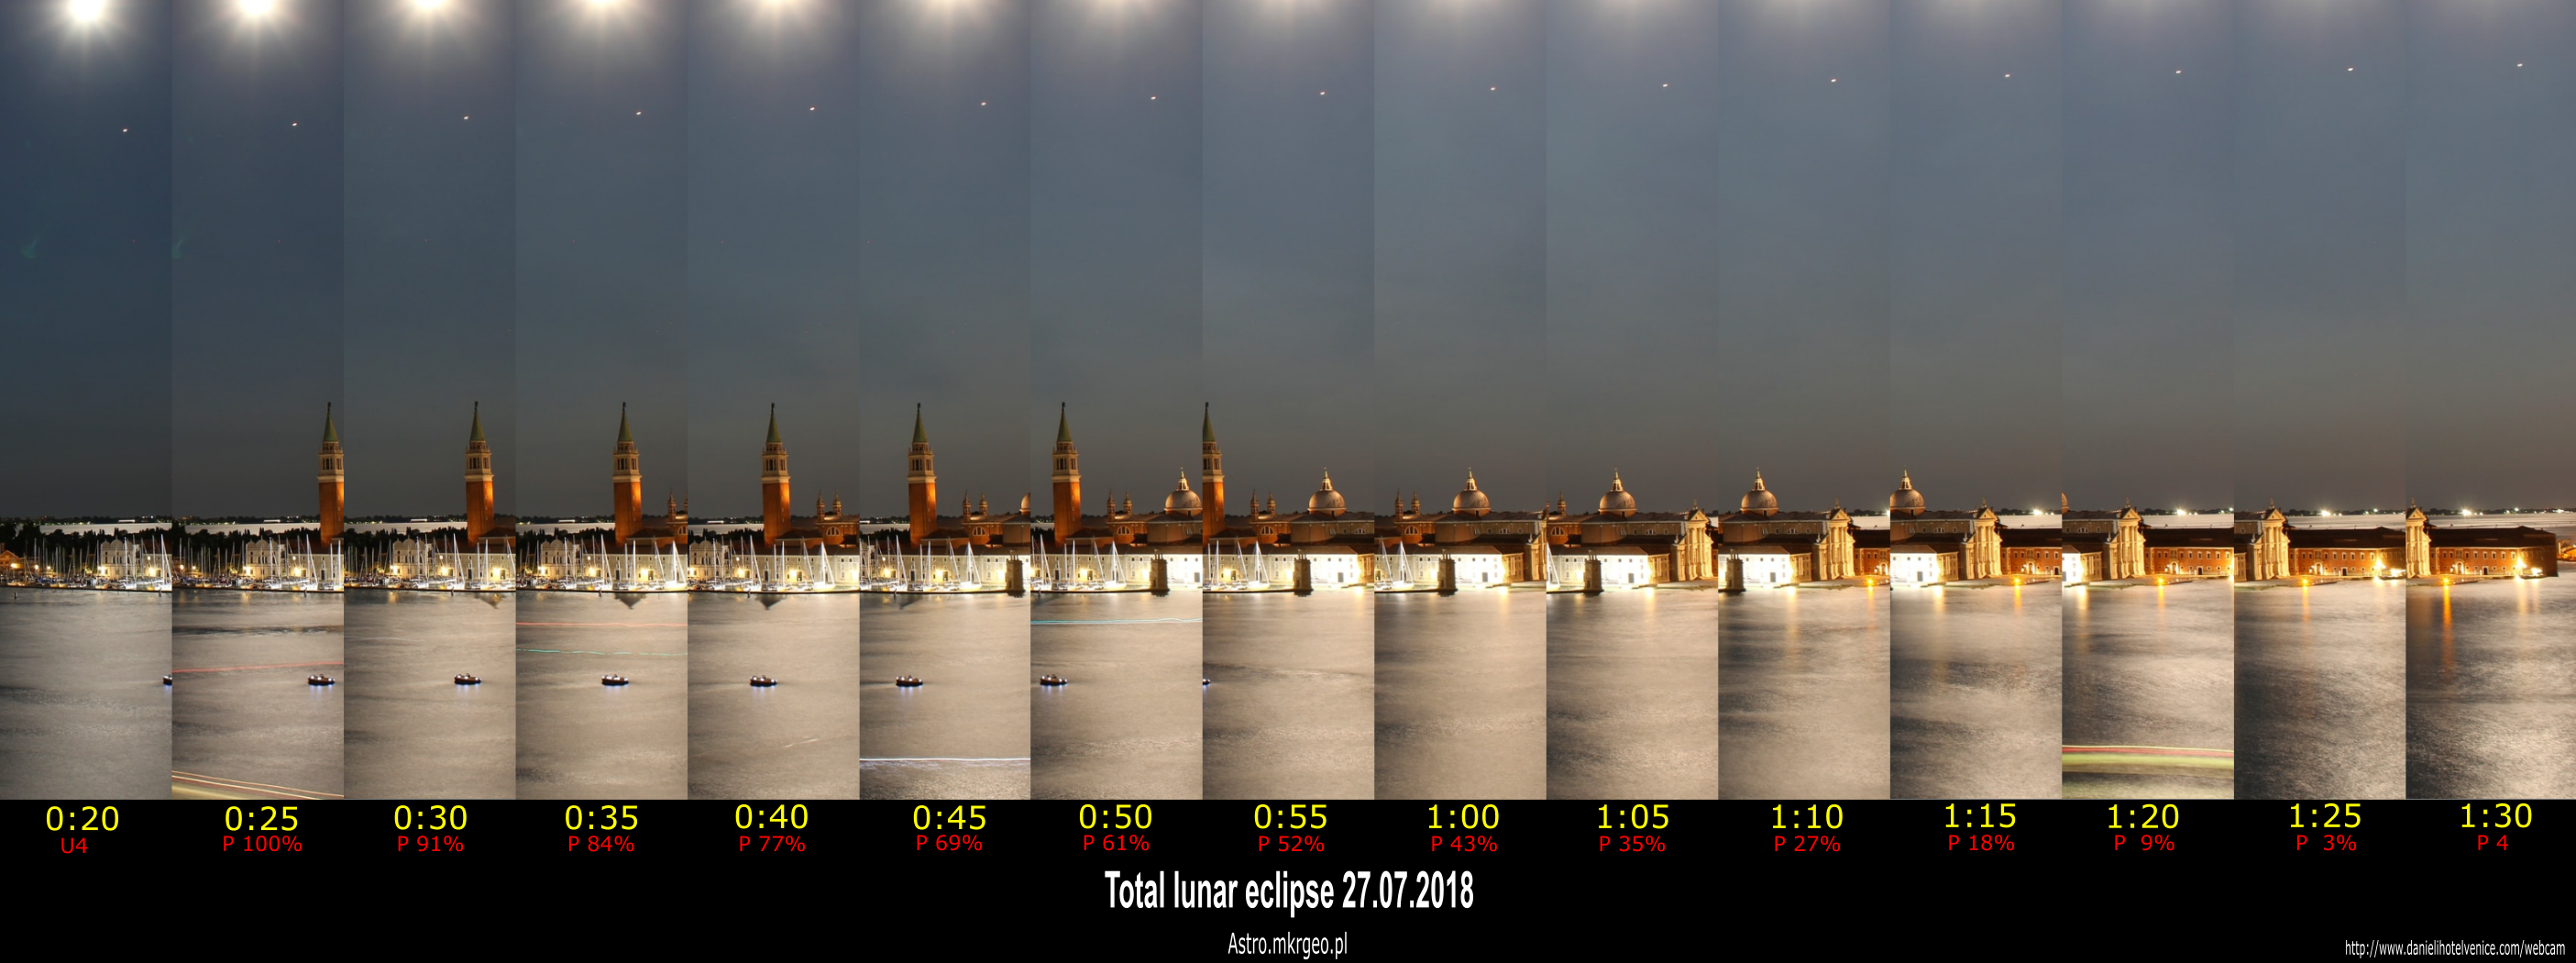 2018 total lunar eclipse above Venice webcam compilation prenumbral phase